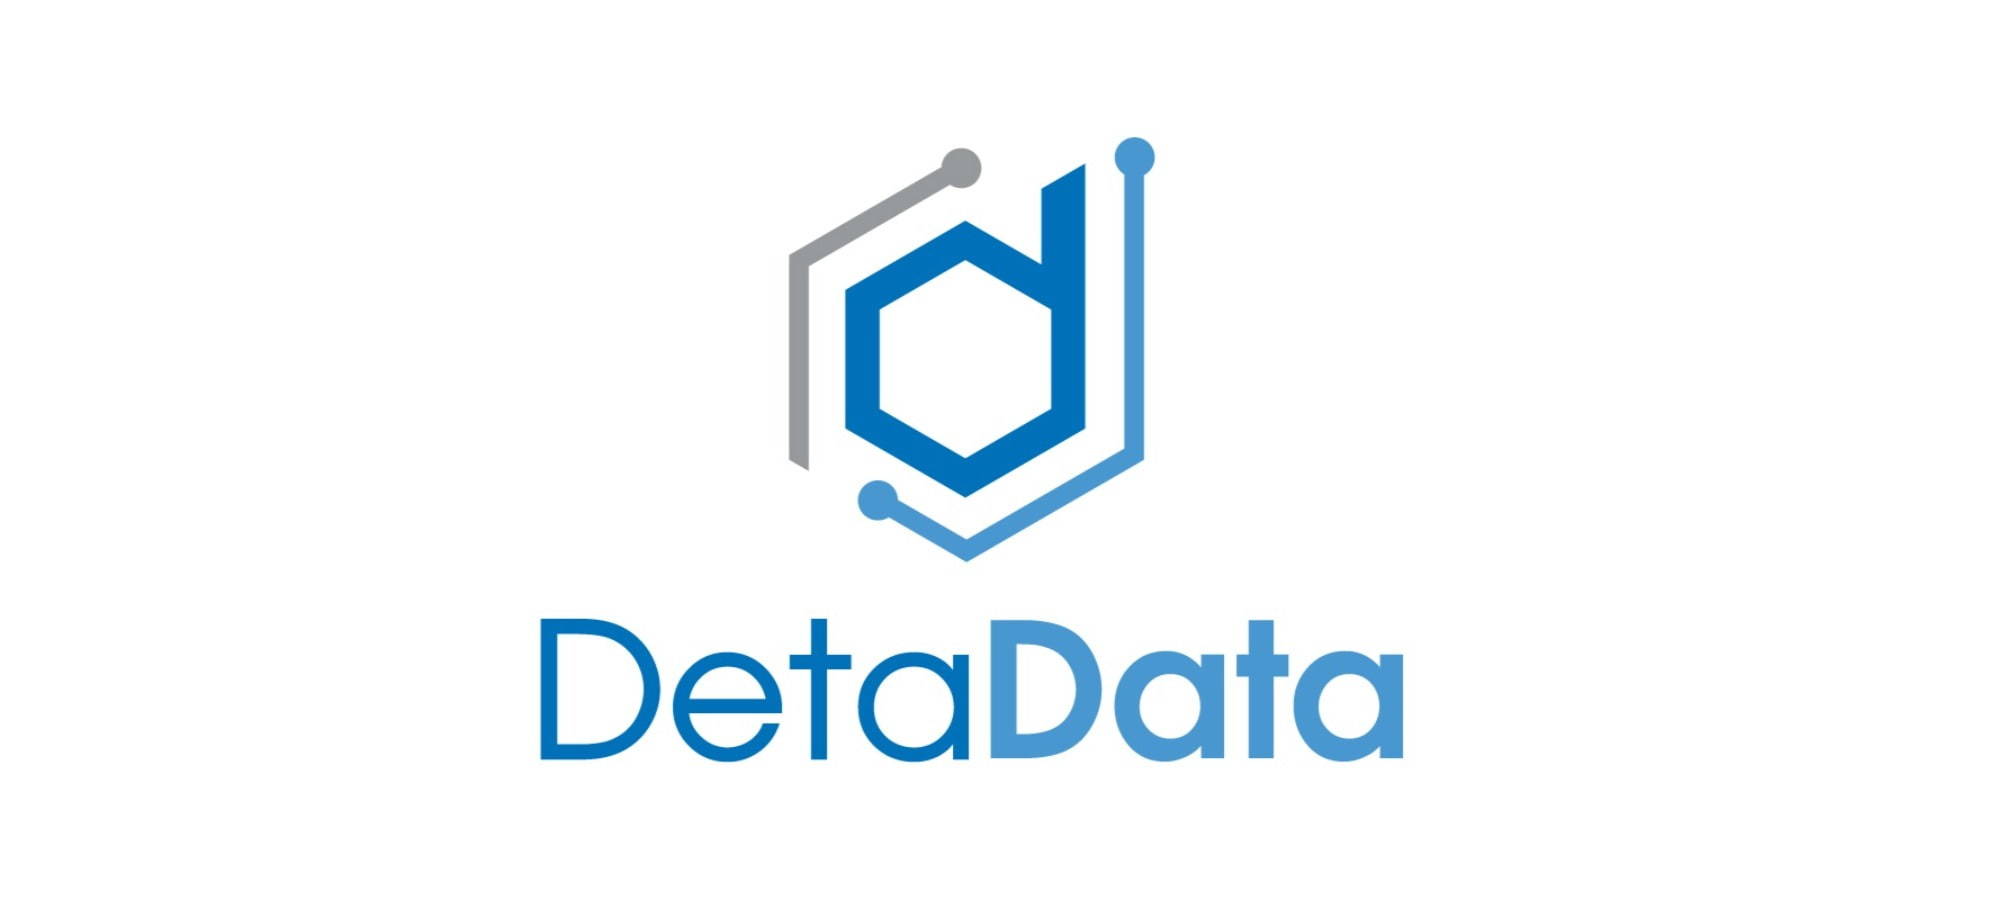 DetaData Logo